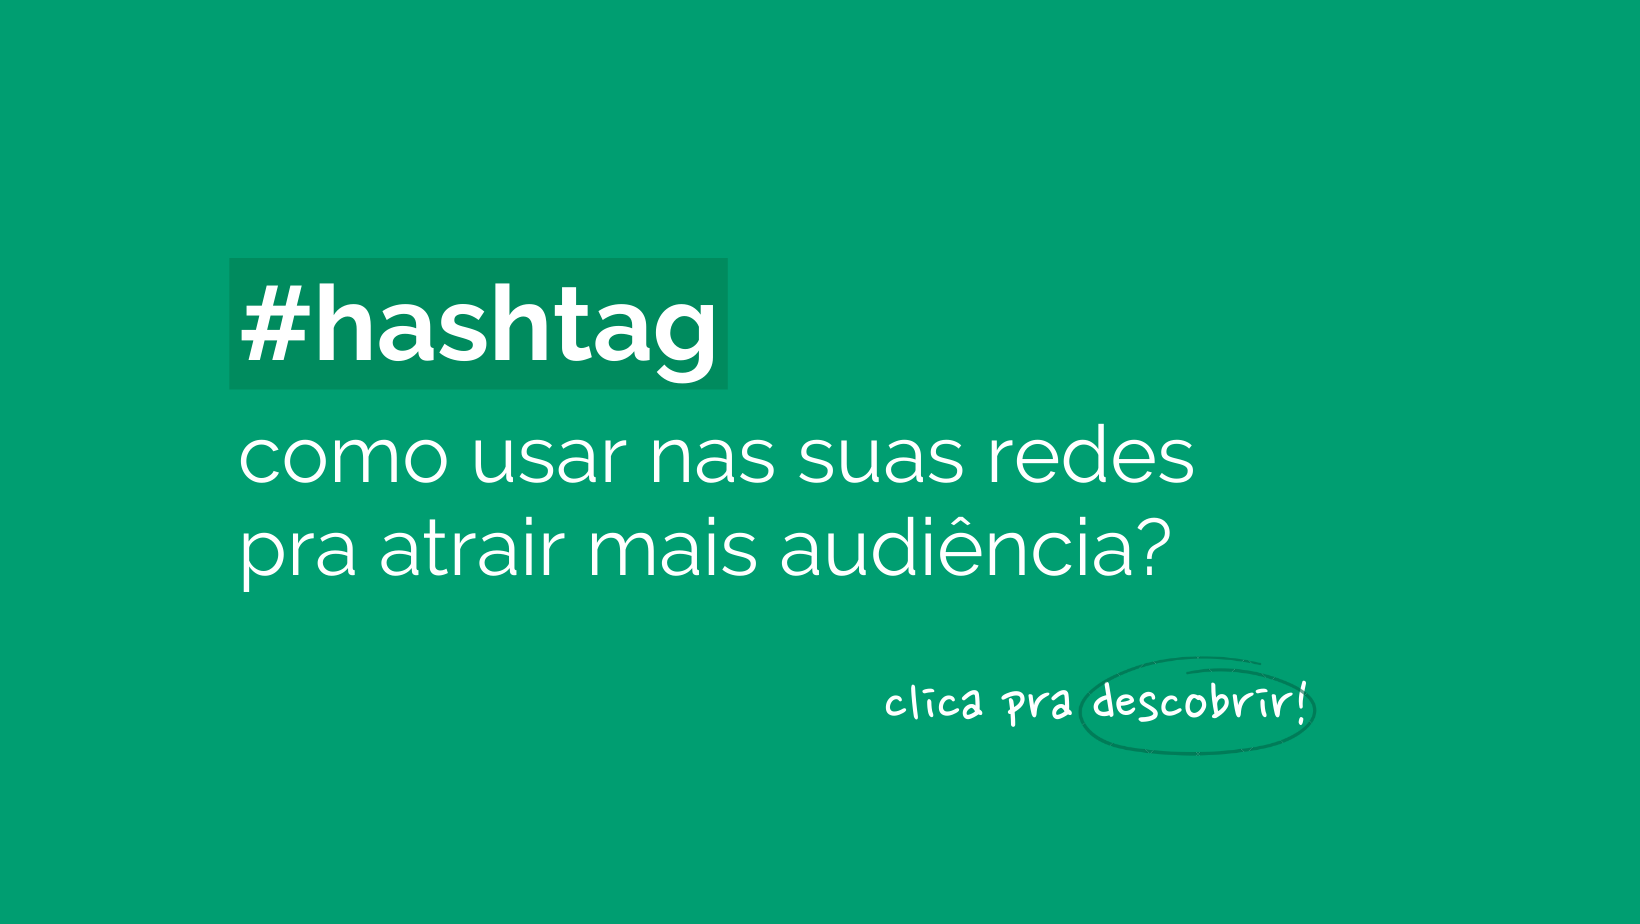 Imagem de capa. Fundo verde com o titulo do post: #hashtag: como usar nas suas redes pra atrair mais audiência?" e abaixo a frase: "clique pra descobrir!"